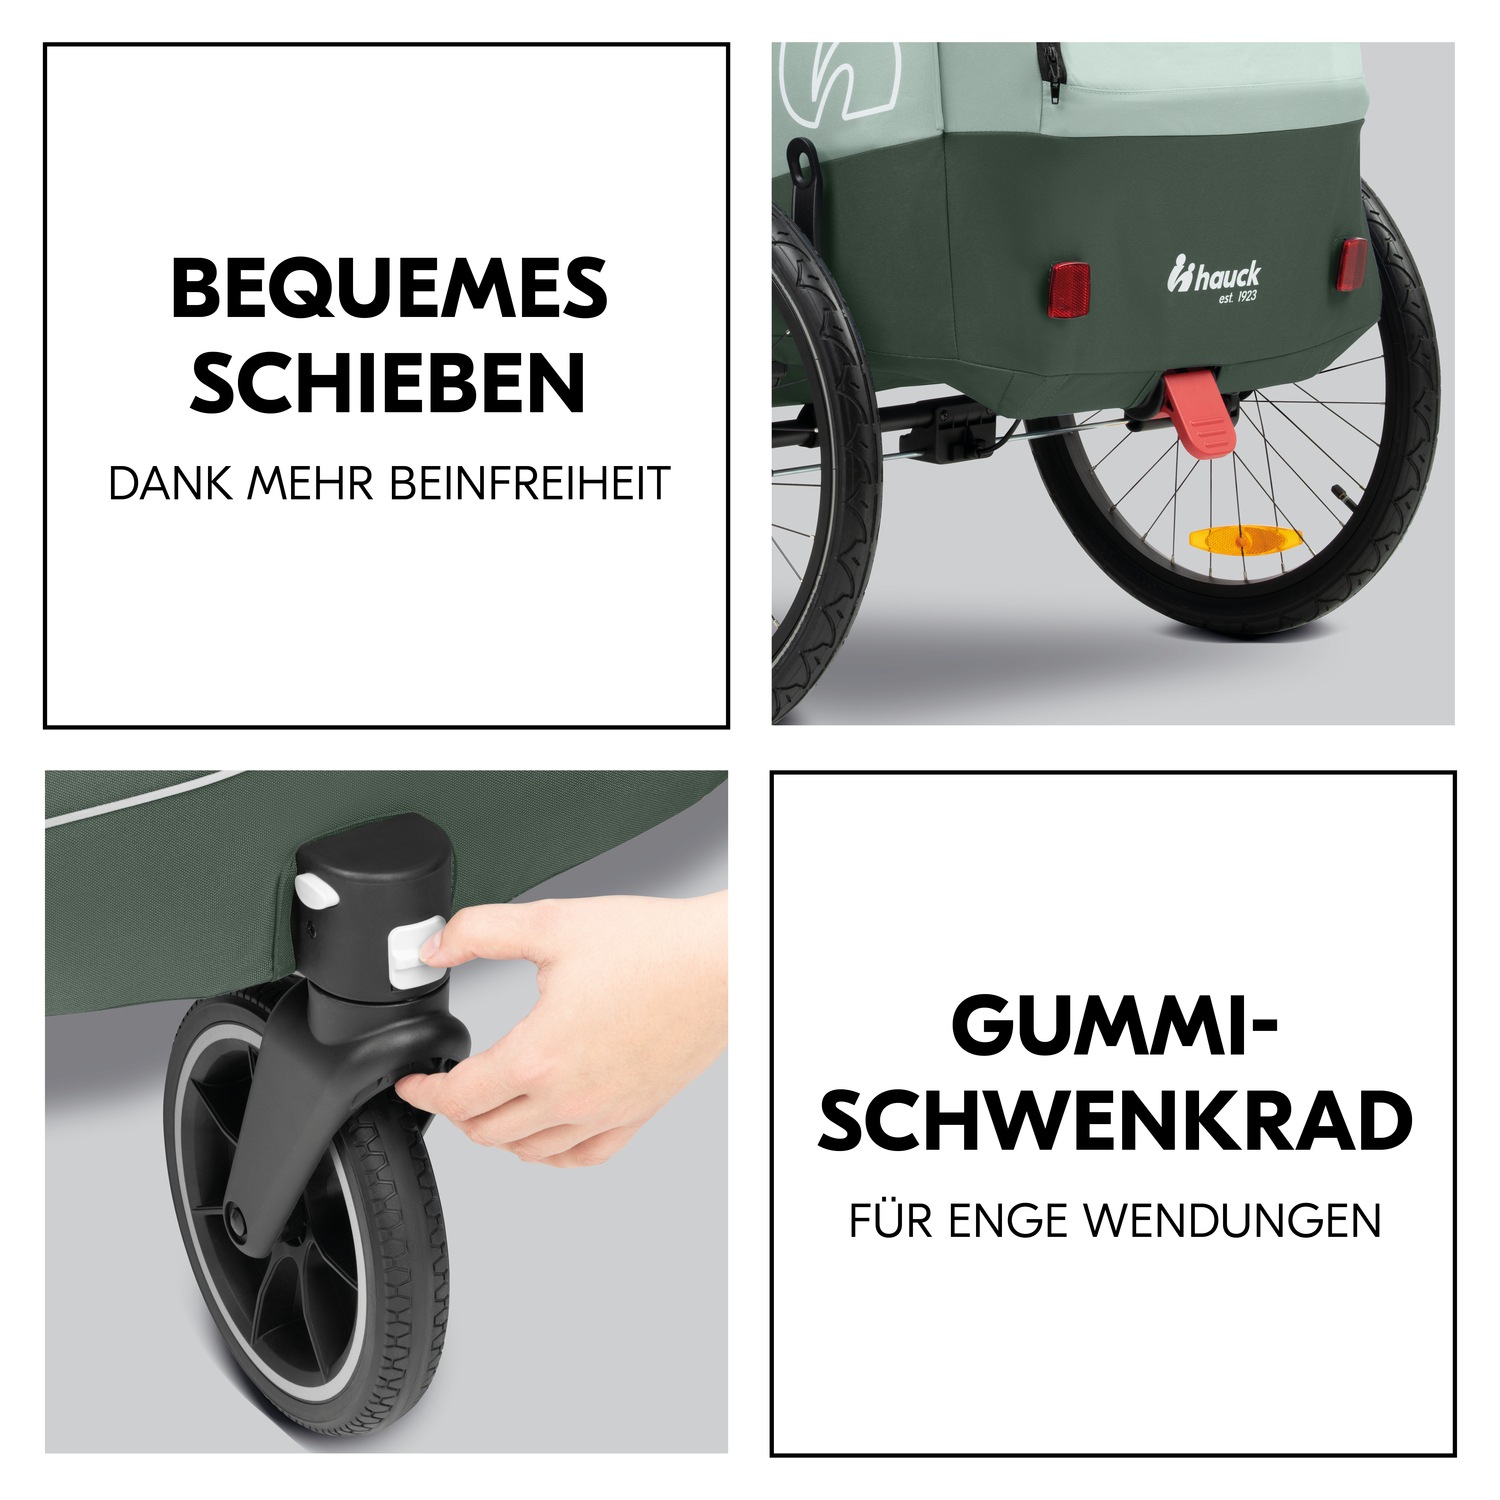 Hauck Fahrradkinderanhänger »2in1 Bike Trailer und Buggy Dryk Duo Plus, dark green«, für 2 Kinder; inklusive Deichsel